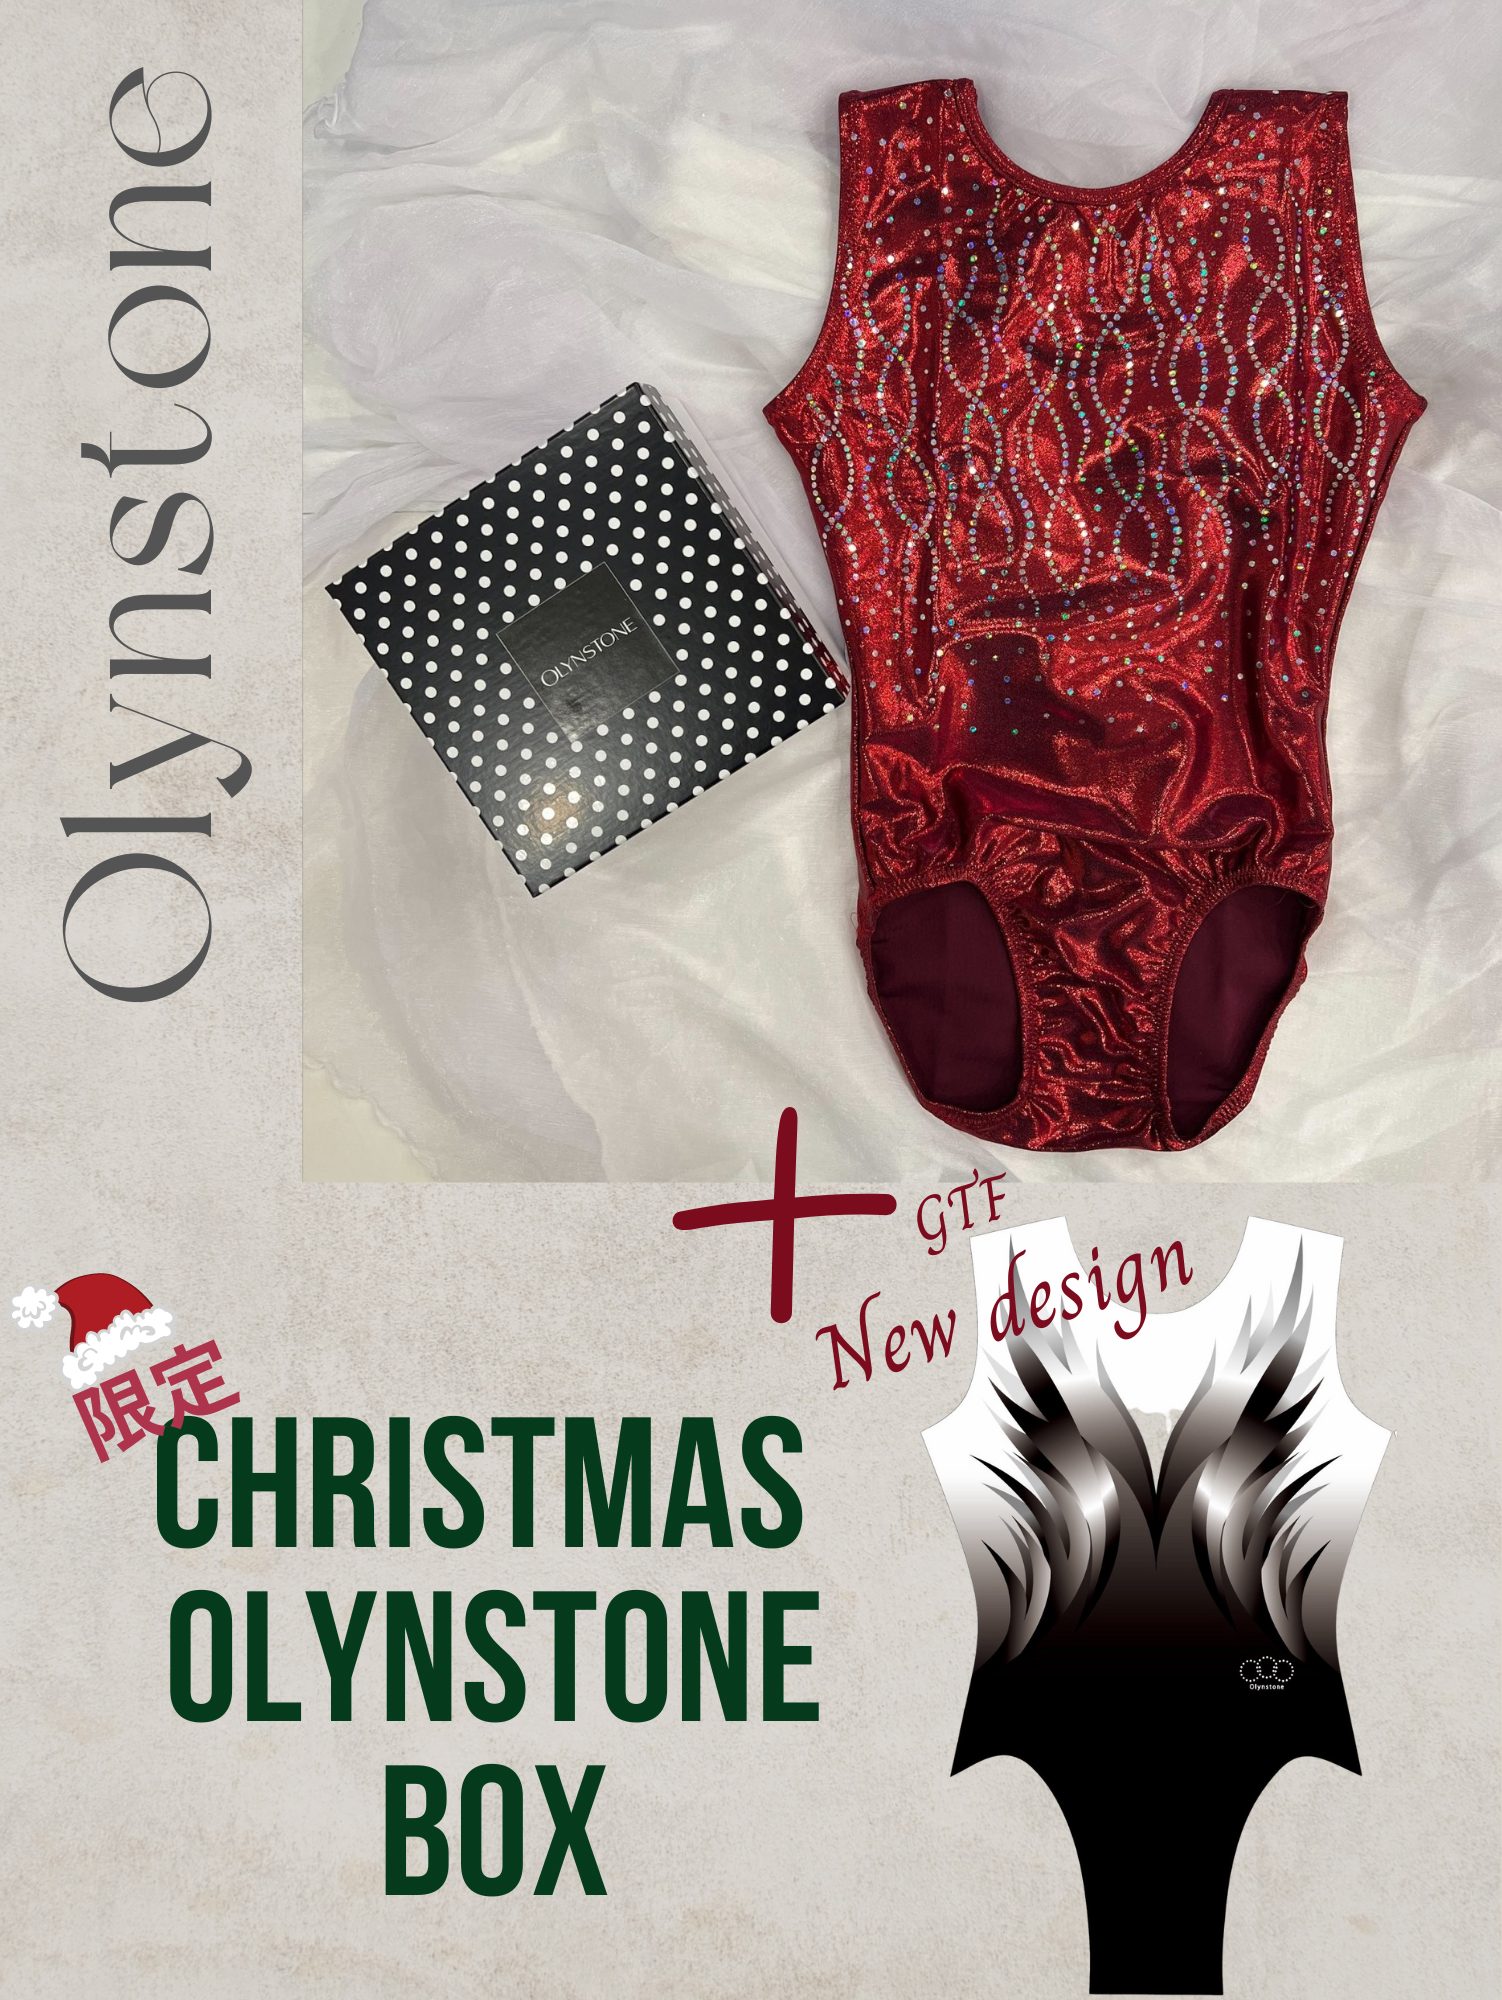 OL-GTC OLYNSTONE CHRISTMAS BOX Cセット